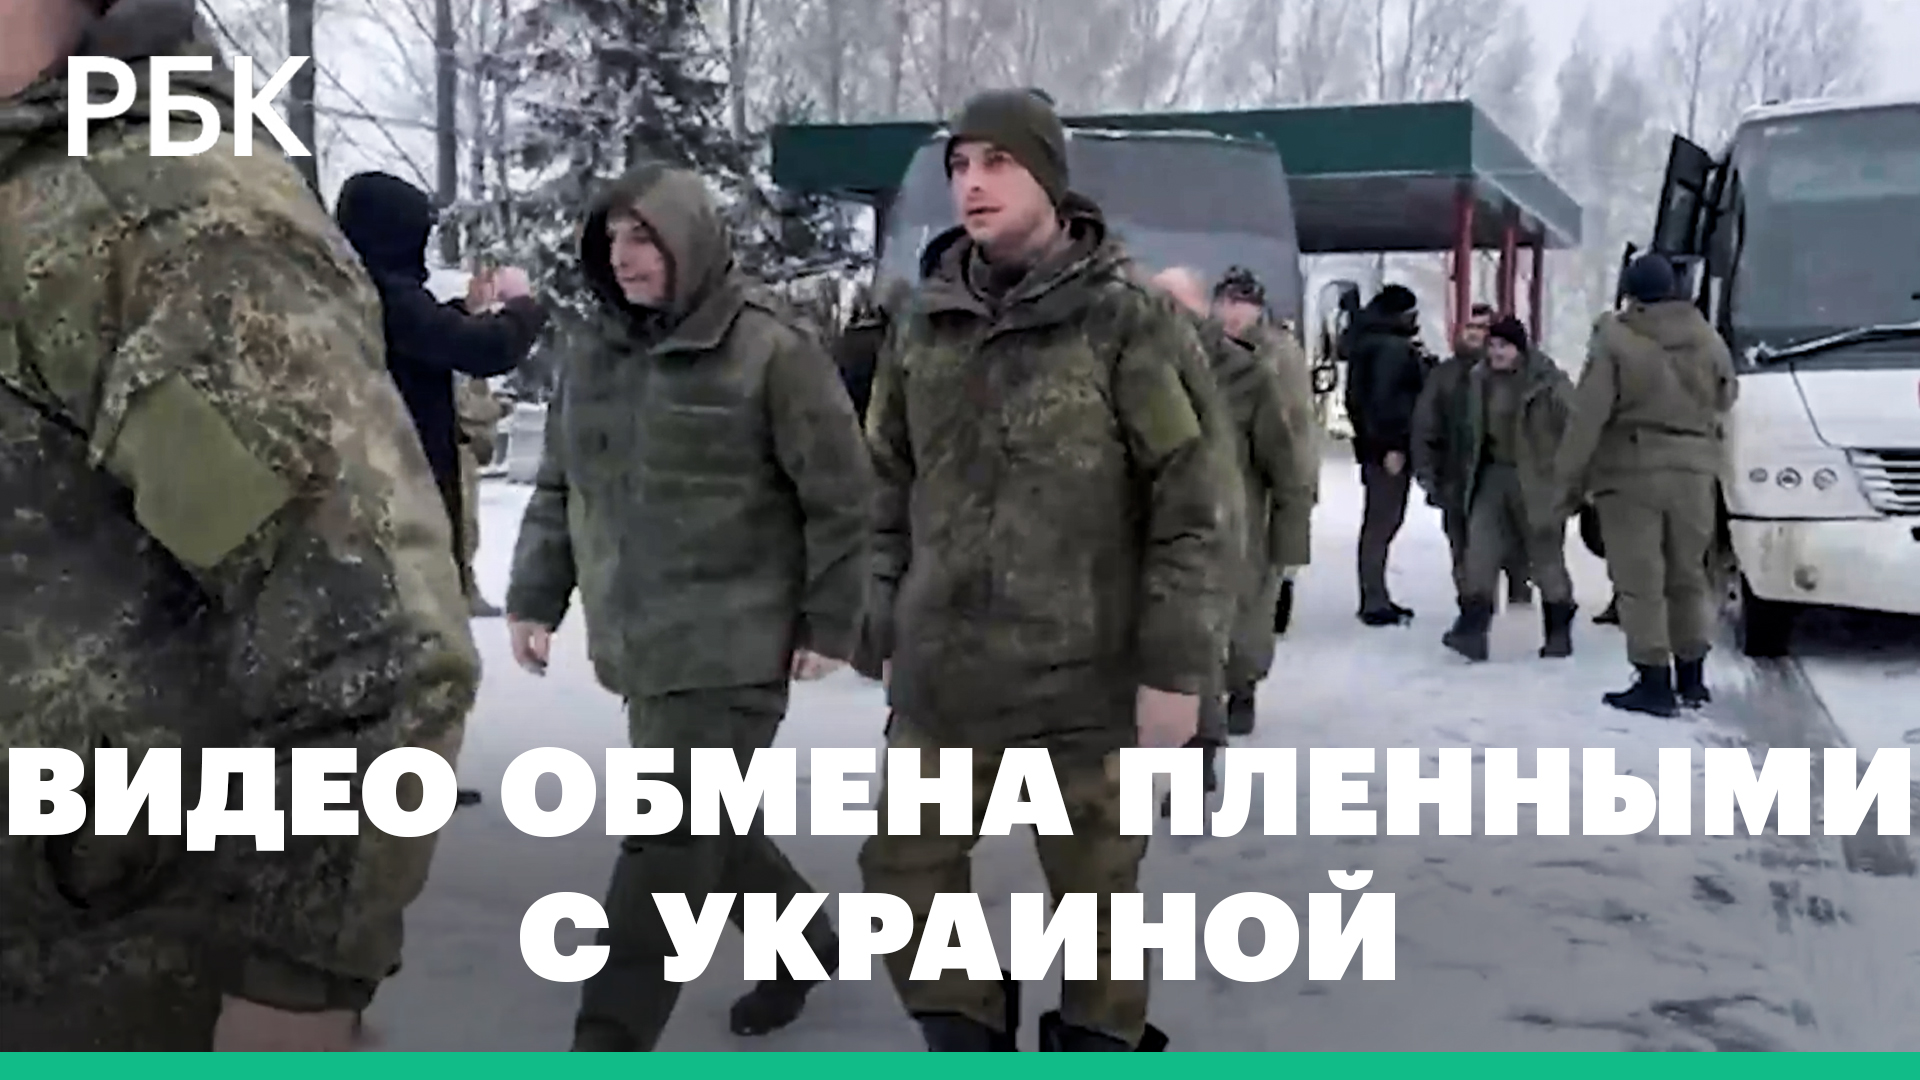 Депутат опубликовал видео обмена пленными с Украиной